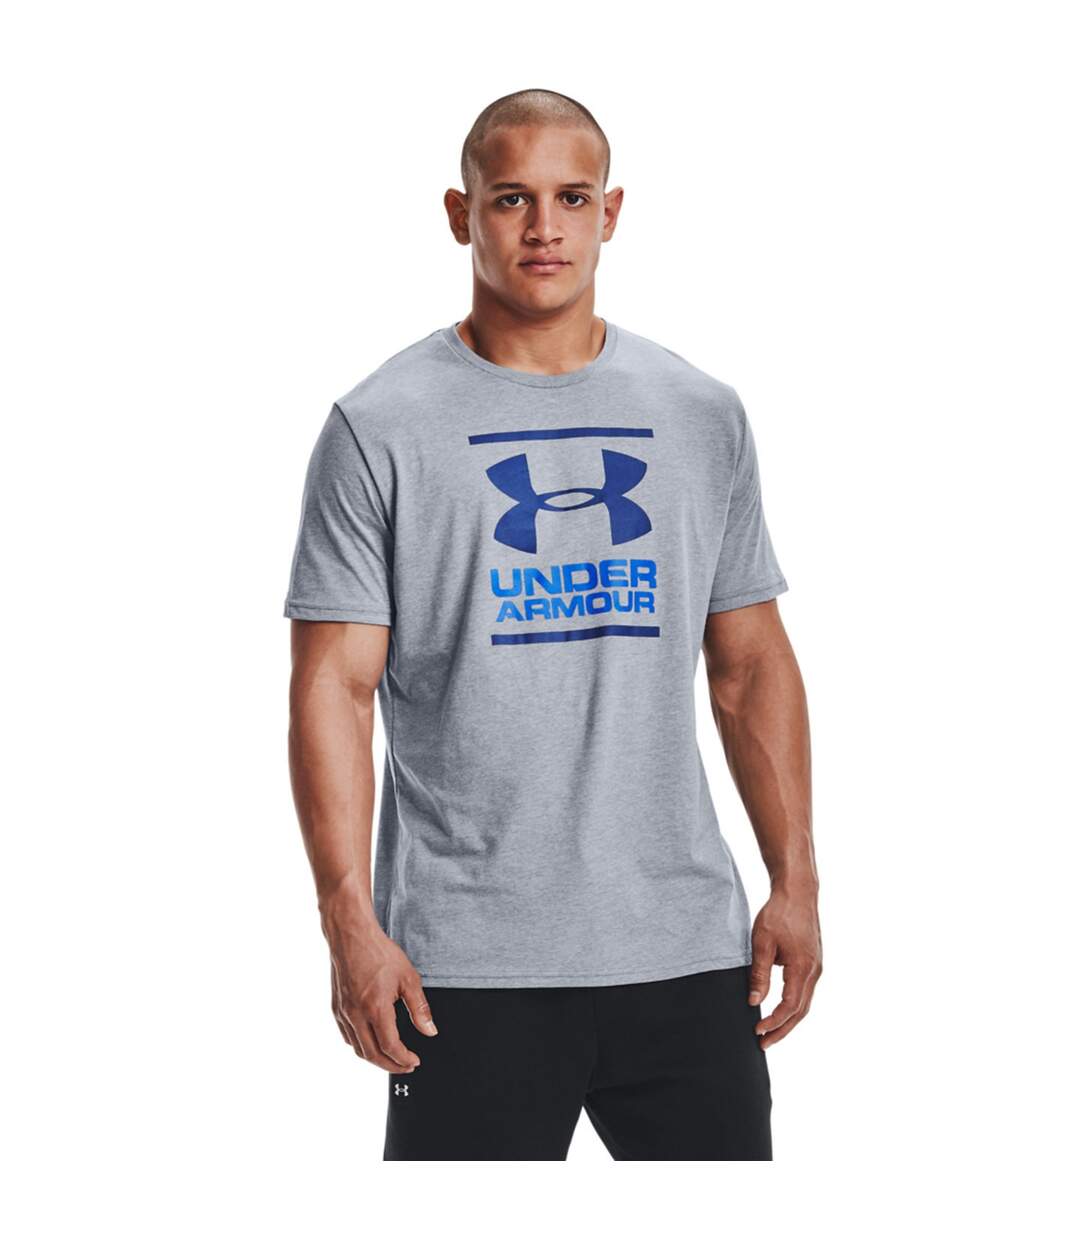 Under Armour - T-shirt FOUNDATION - Homme (Gris clair chiné / Bleu / Bleu foncé) - UTRW8342